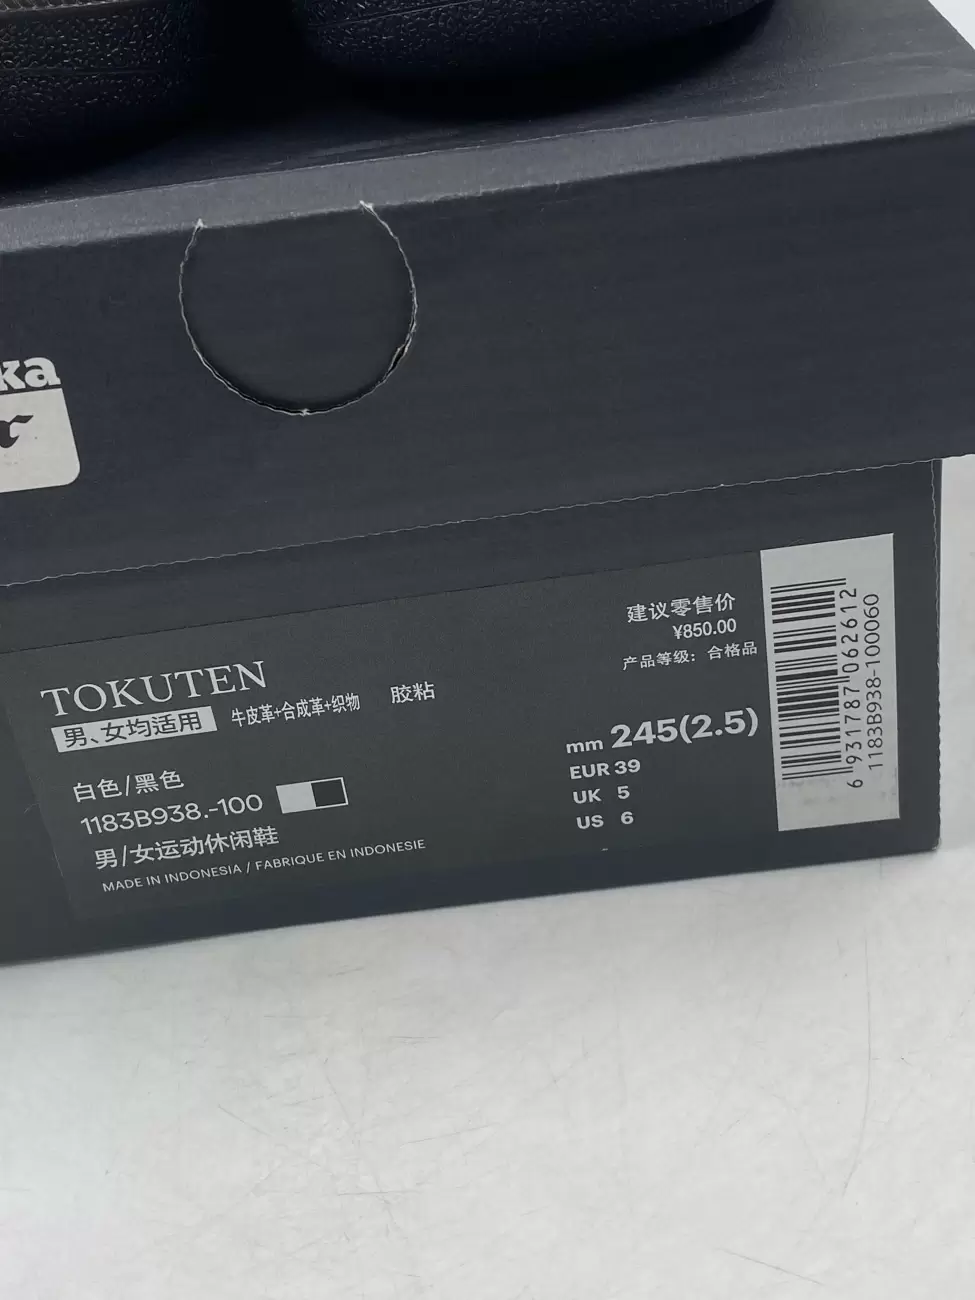 44586 - Onitsuka Tiger Tokuten White Black Gold | Item Details ...